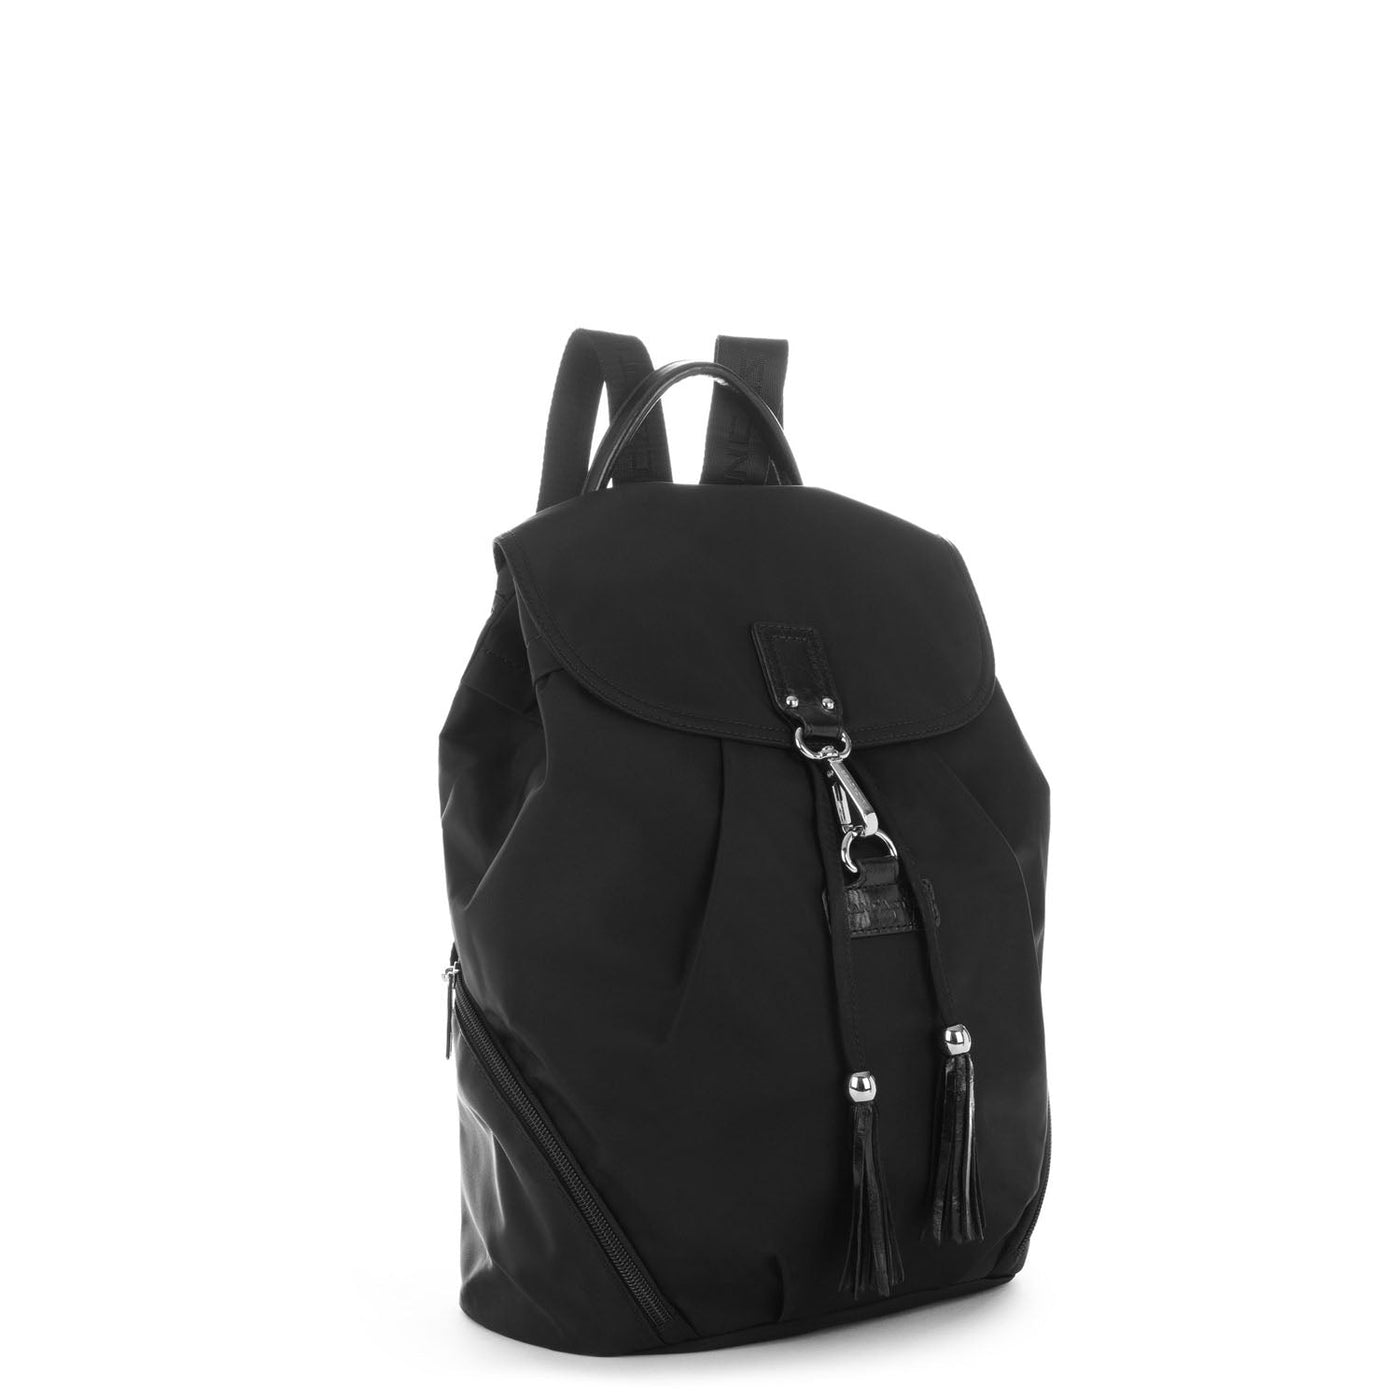 backpack - basic pompon #couleur_noir